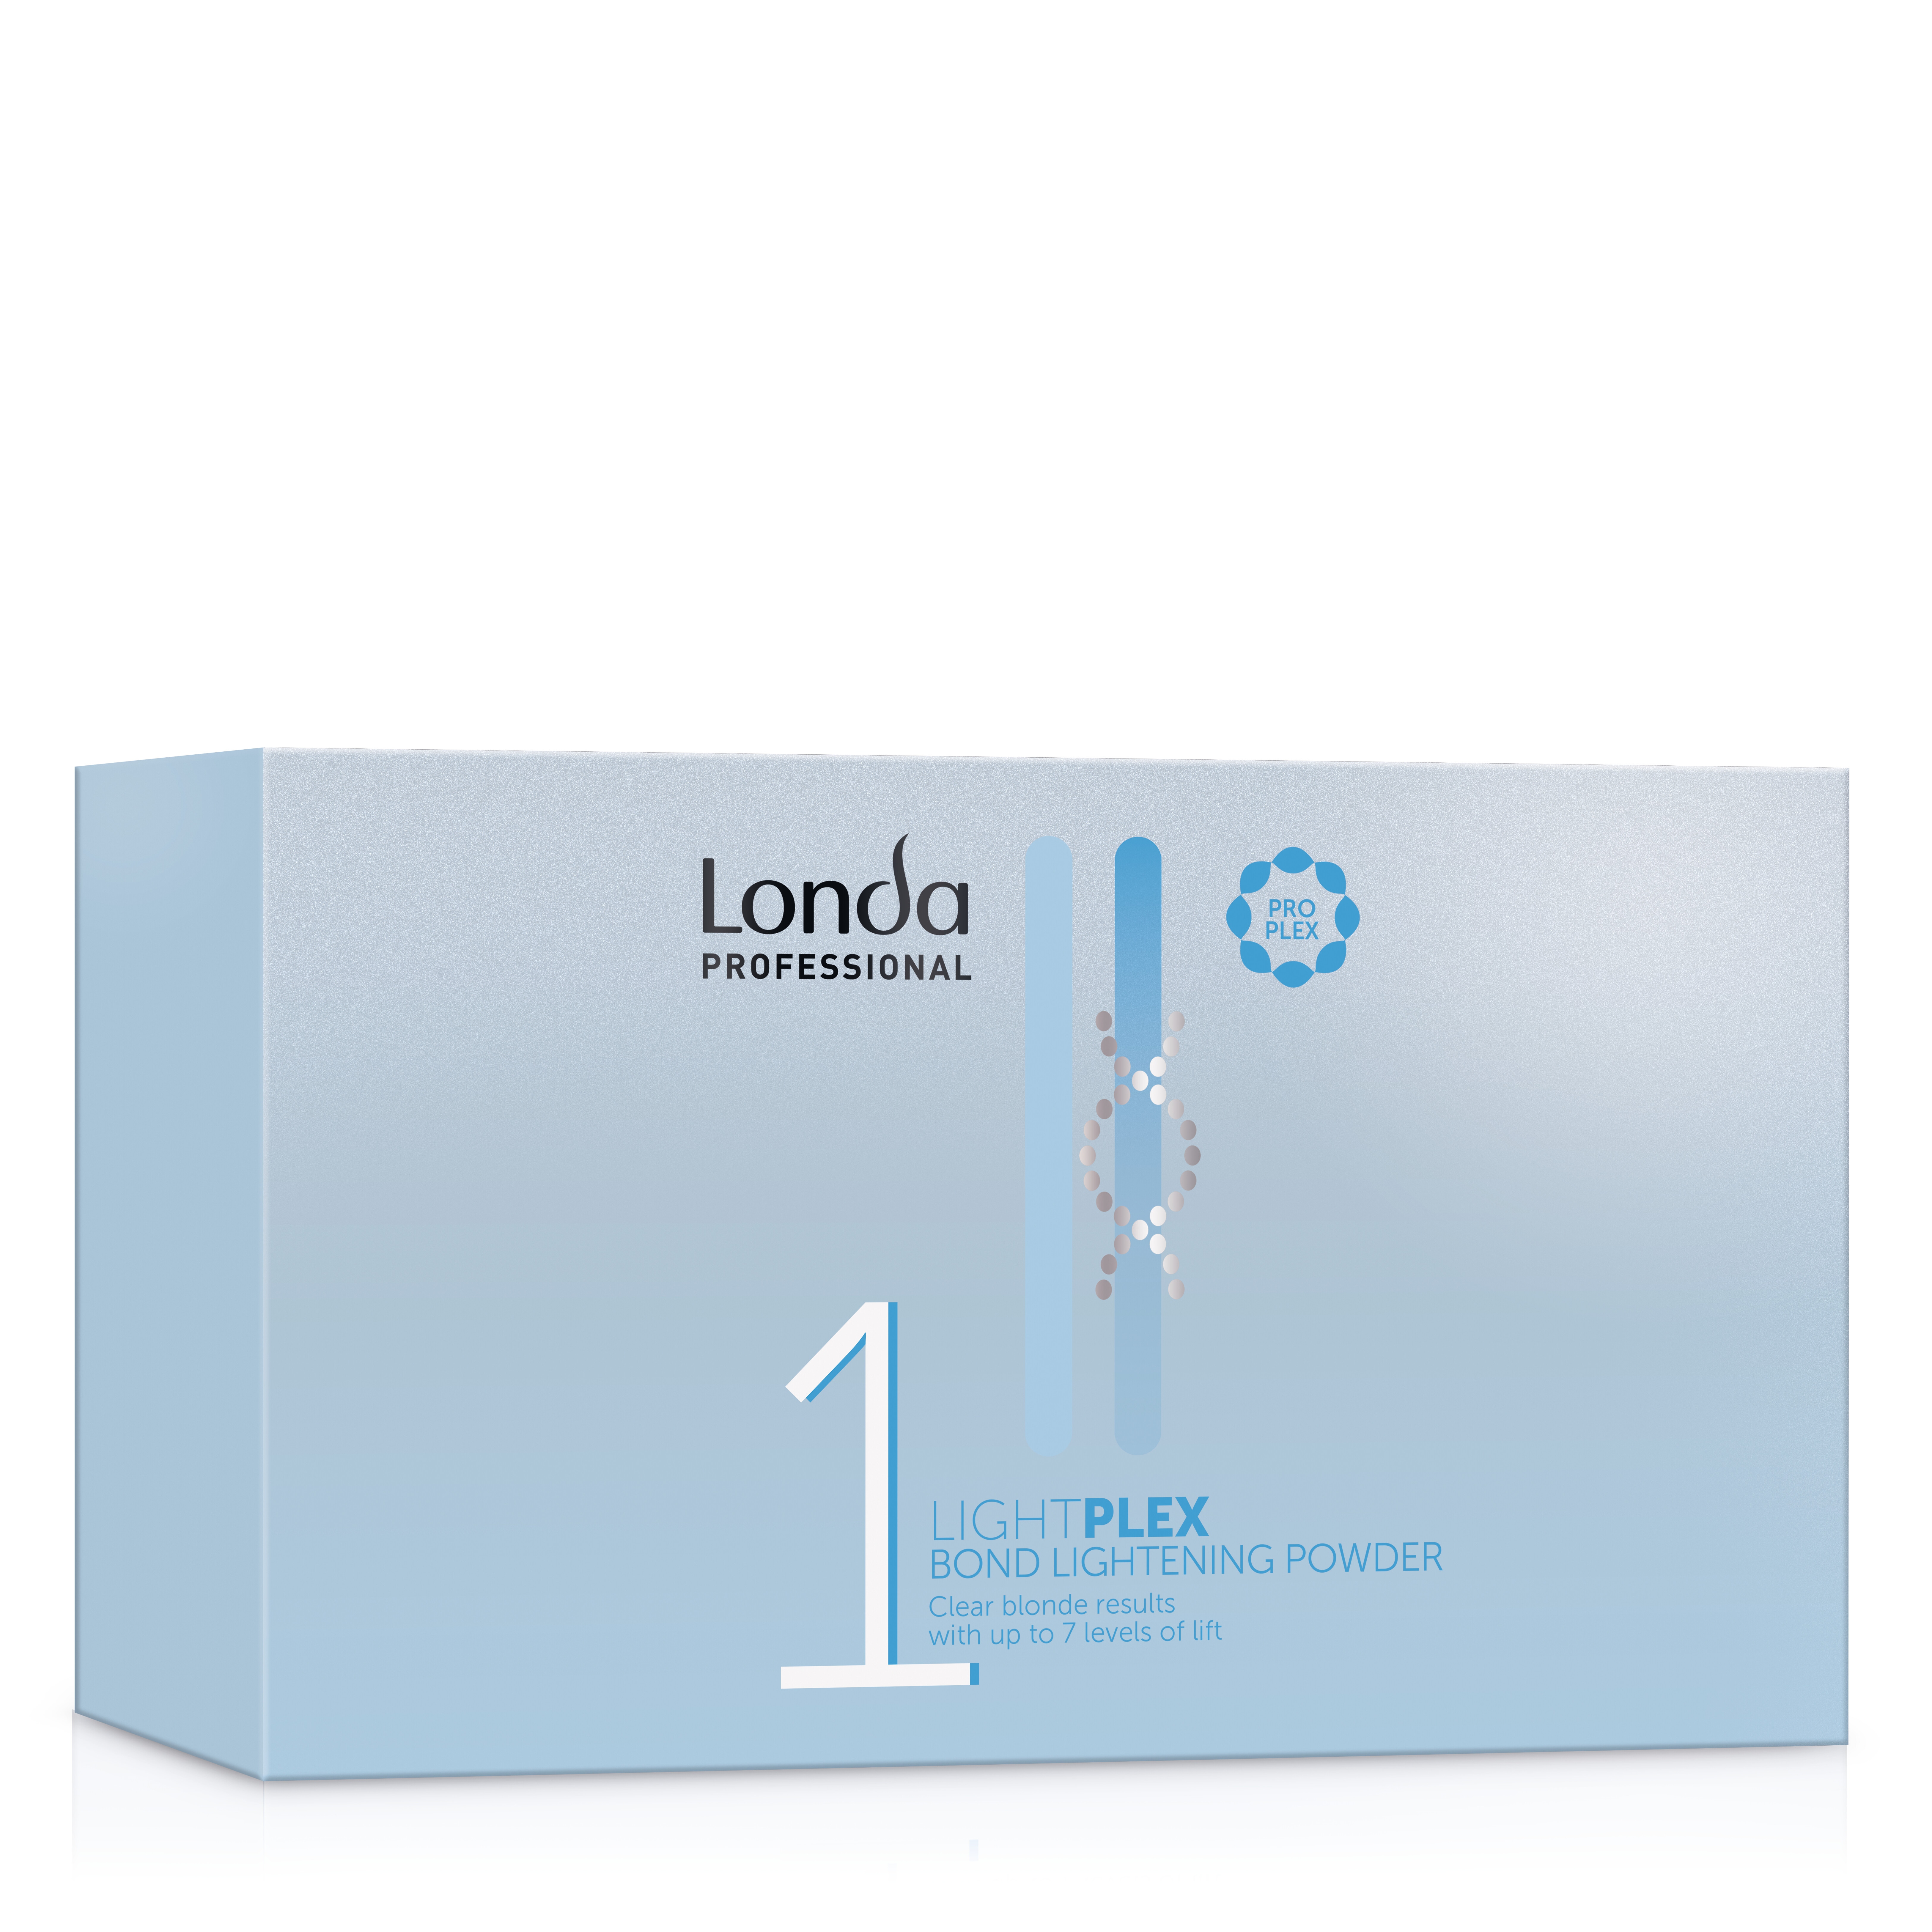 Осветлители для волос:  Londa Professional -  Осветляющая пудра в коробке Lightplex, шаг 1 (1000 мл)